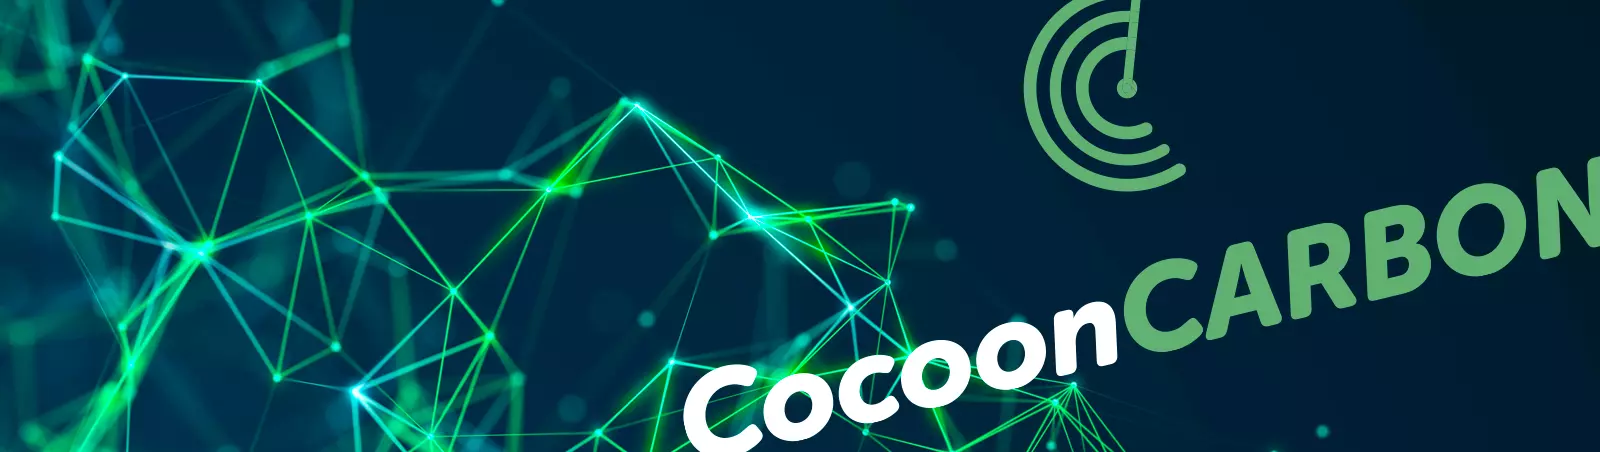 CocoonCarbon - Carbon Emissions Software